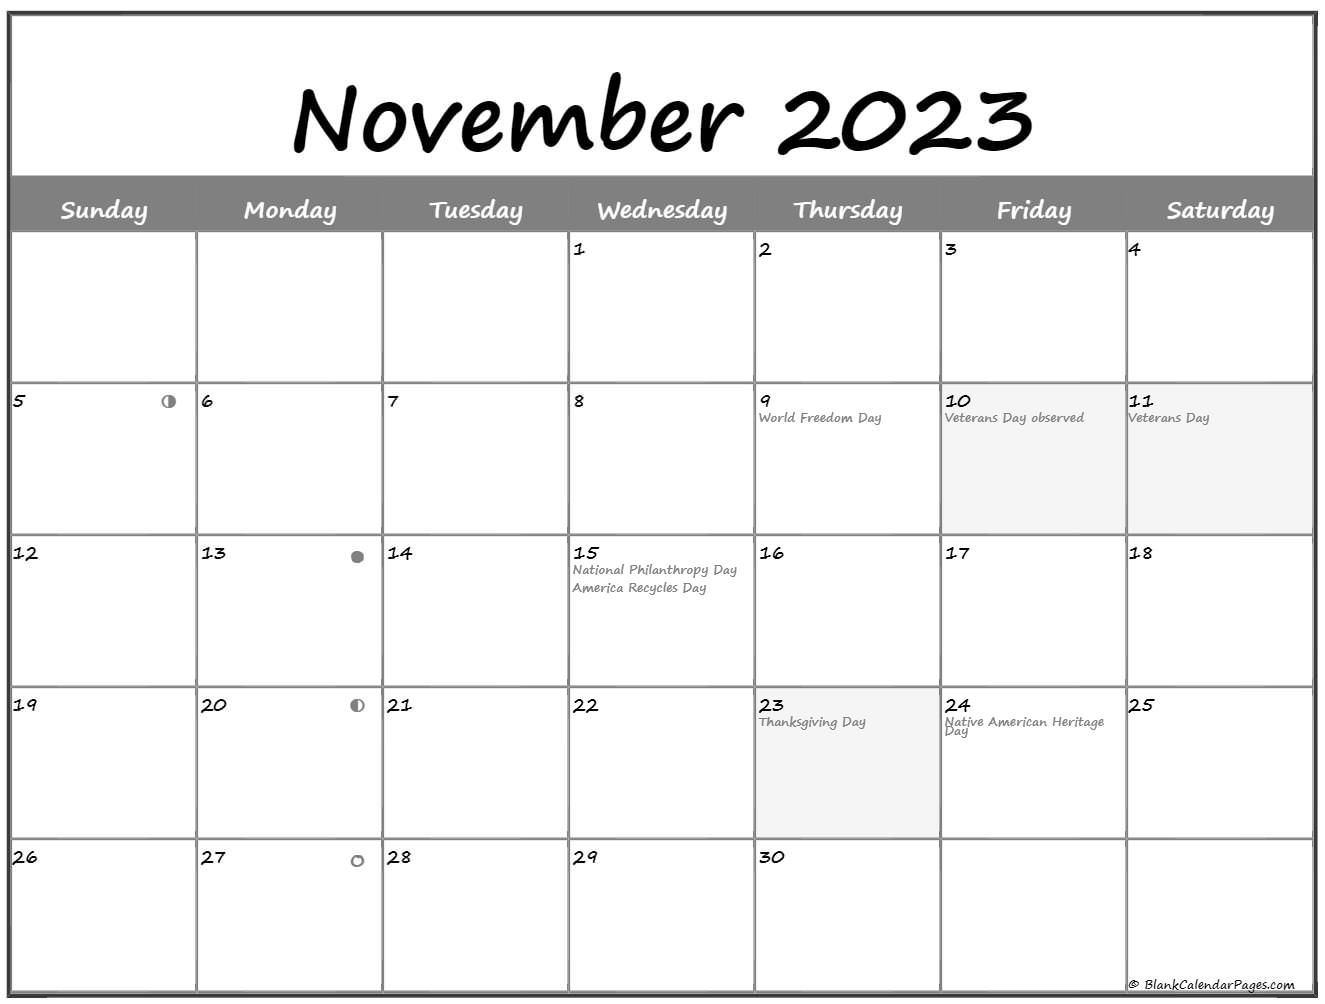 moon-calendar-november-2023-printable-calendar-2023